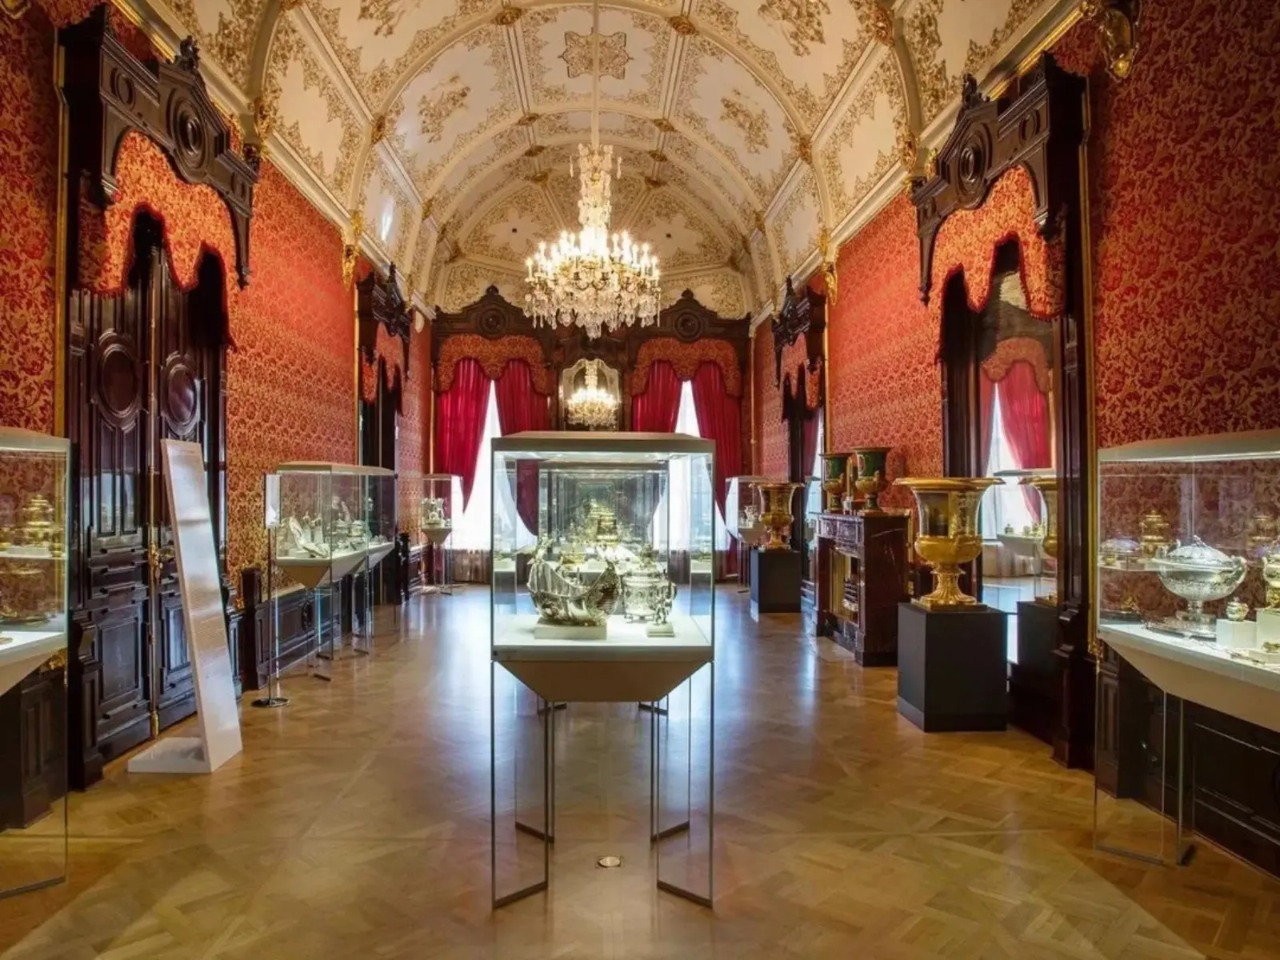 Имперская роскошь Музея Фаберже   | Цена 3500₽, отзывы, описание экскурсии